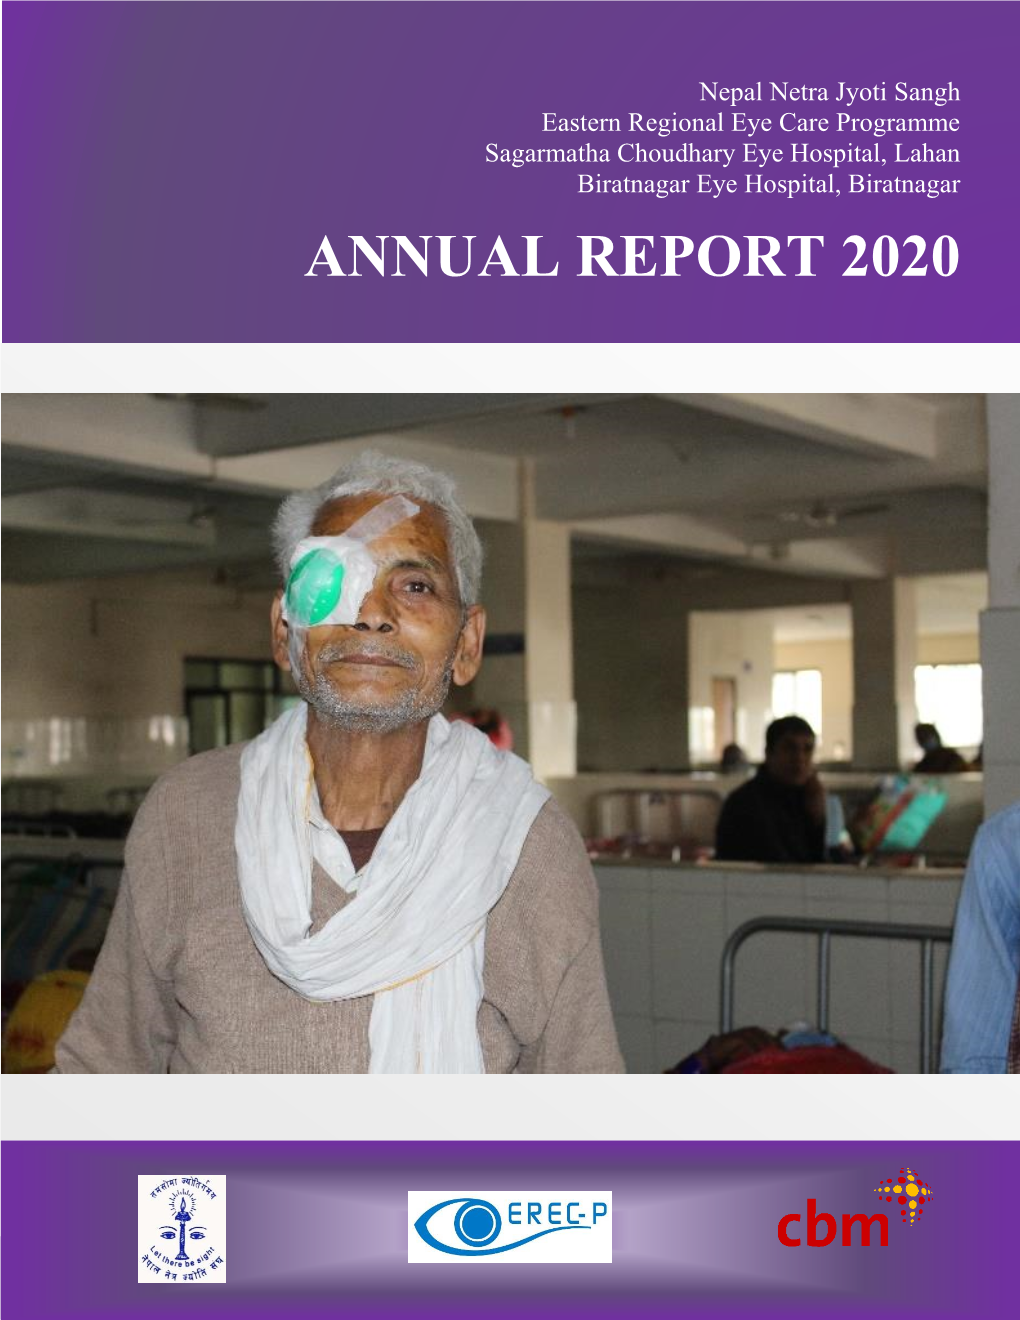 EREC-P Annual Report 2020